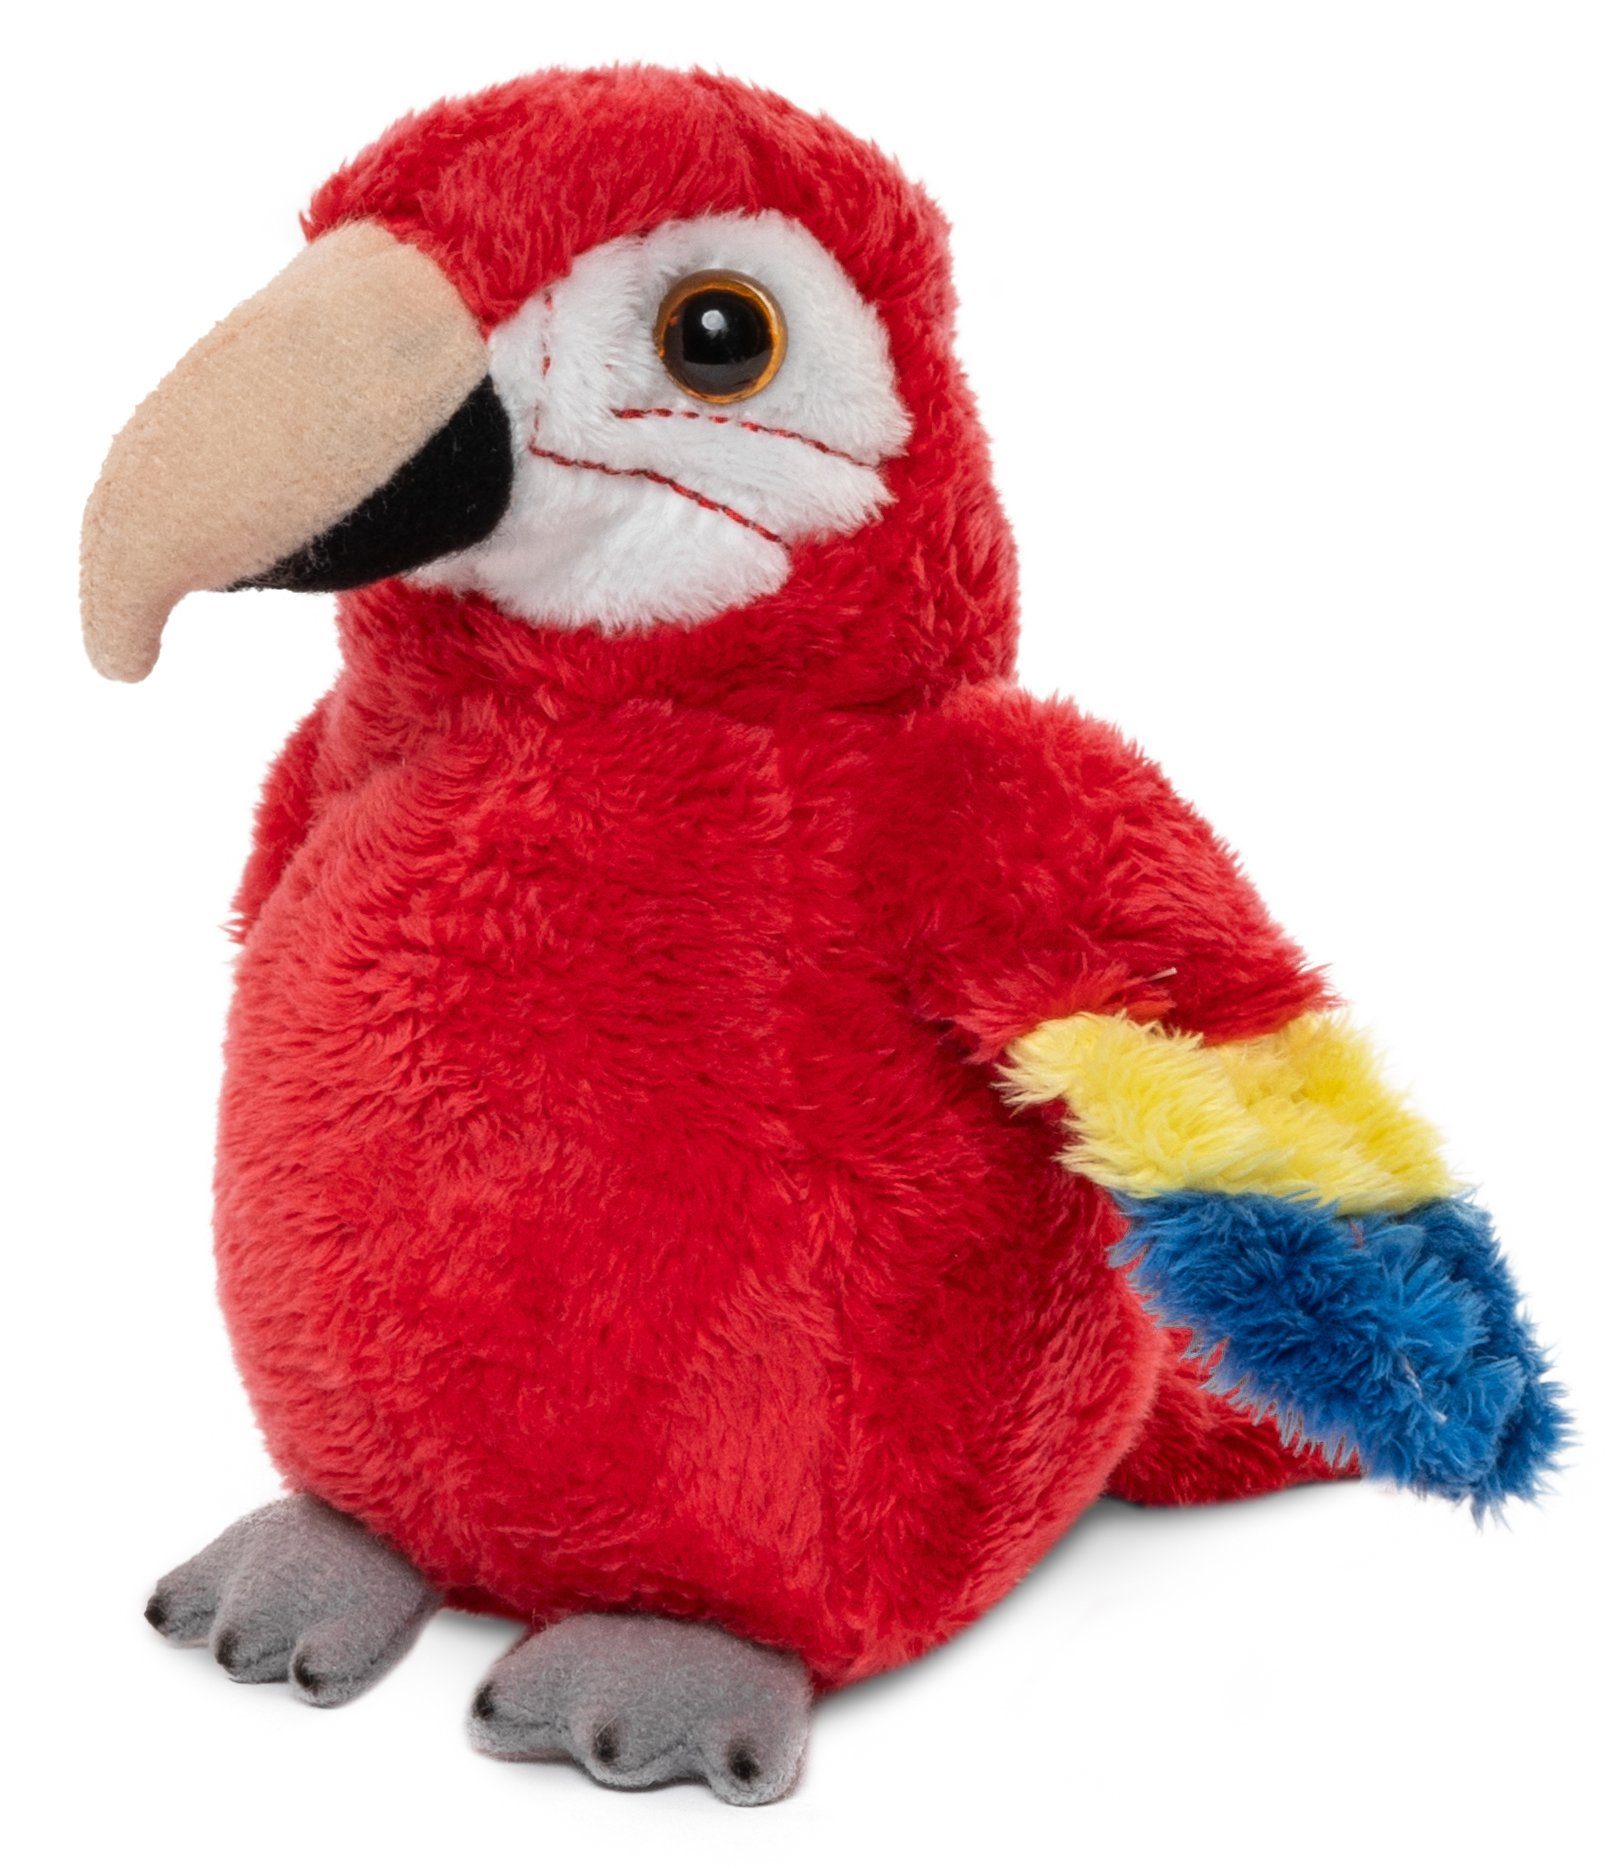 Uni-Toys - Ente mit Stimme - 16 cm (Länge) - Plüsch-Vogel